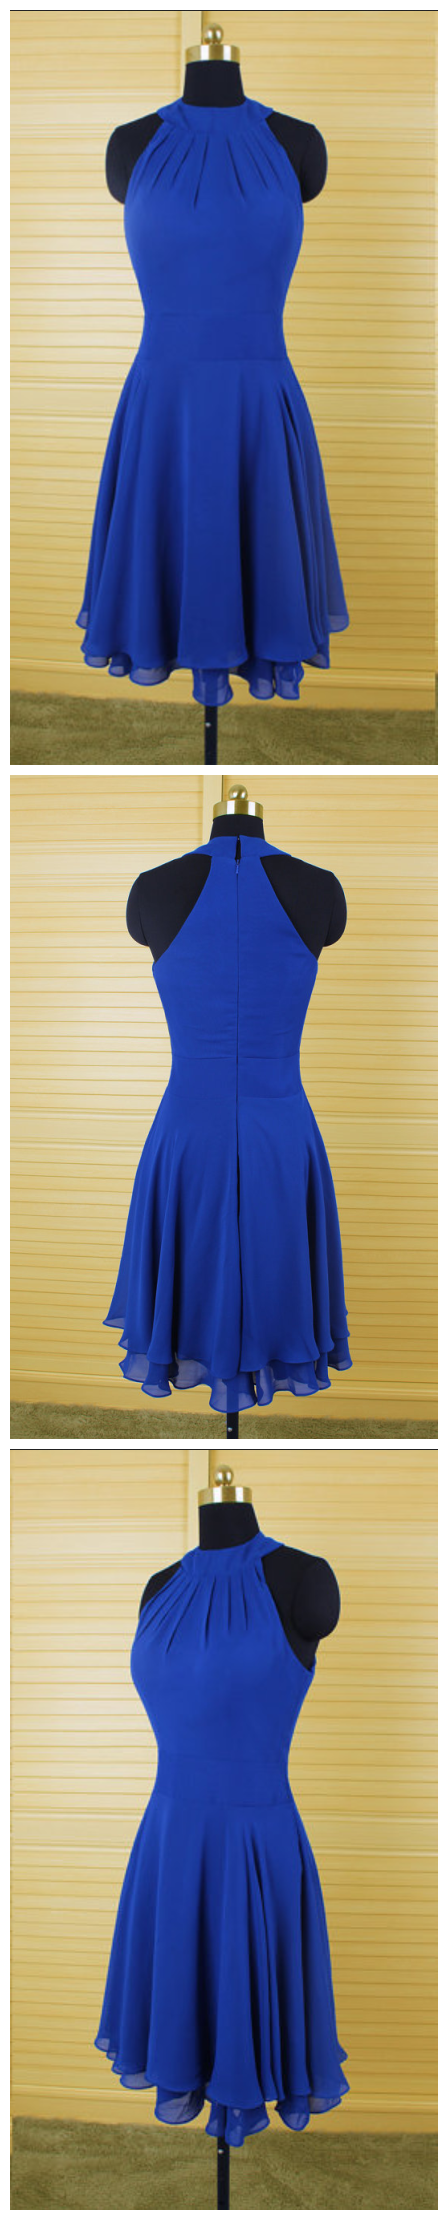 Chiffon Short Homecoming Dress,royal Blue Homecoming Dresses